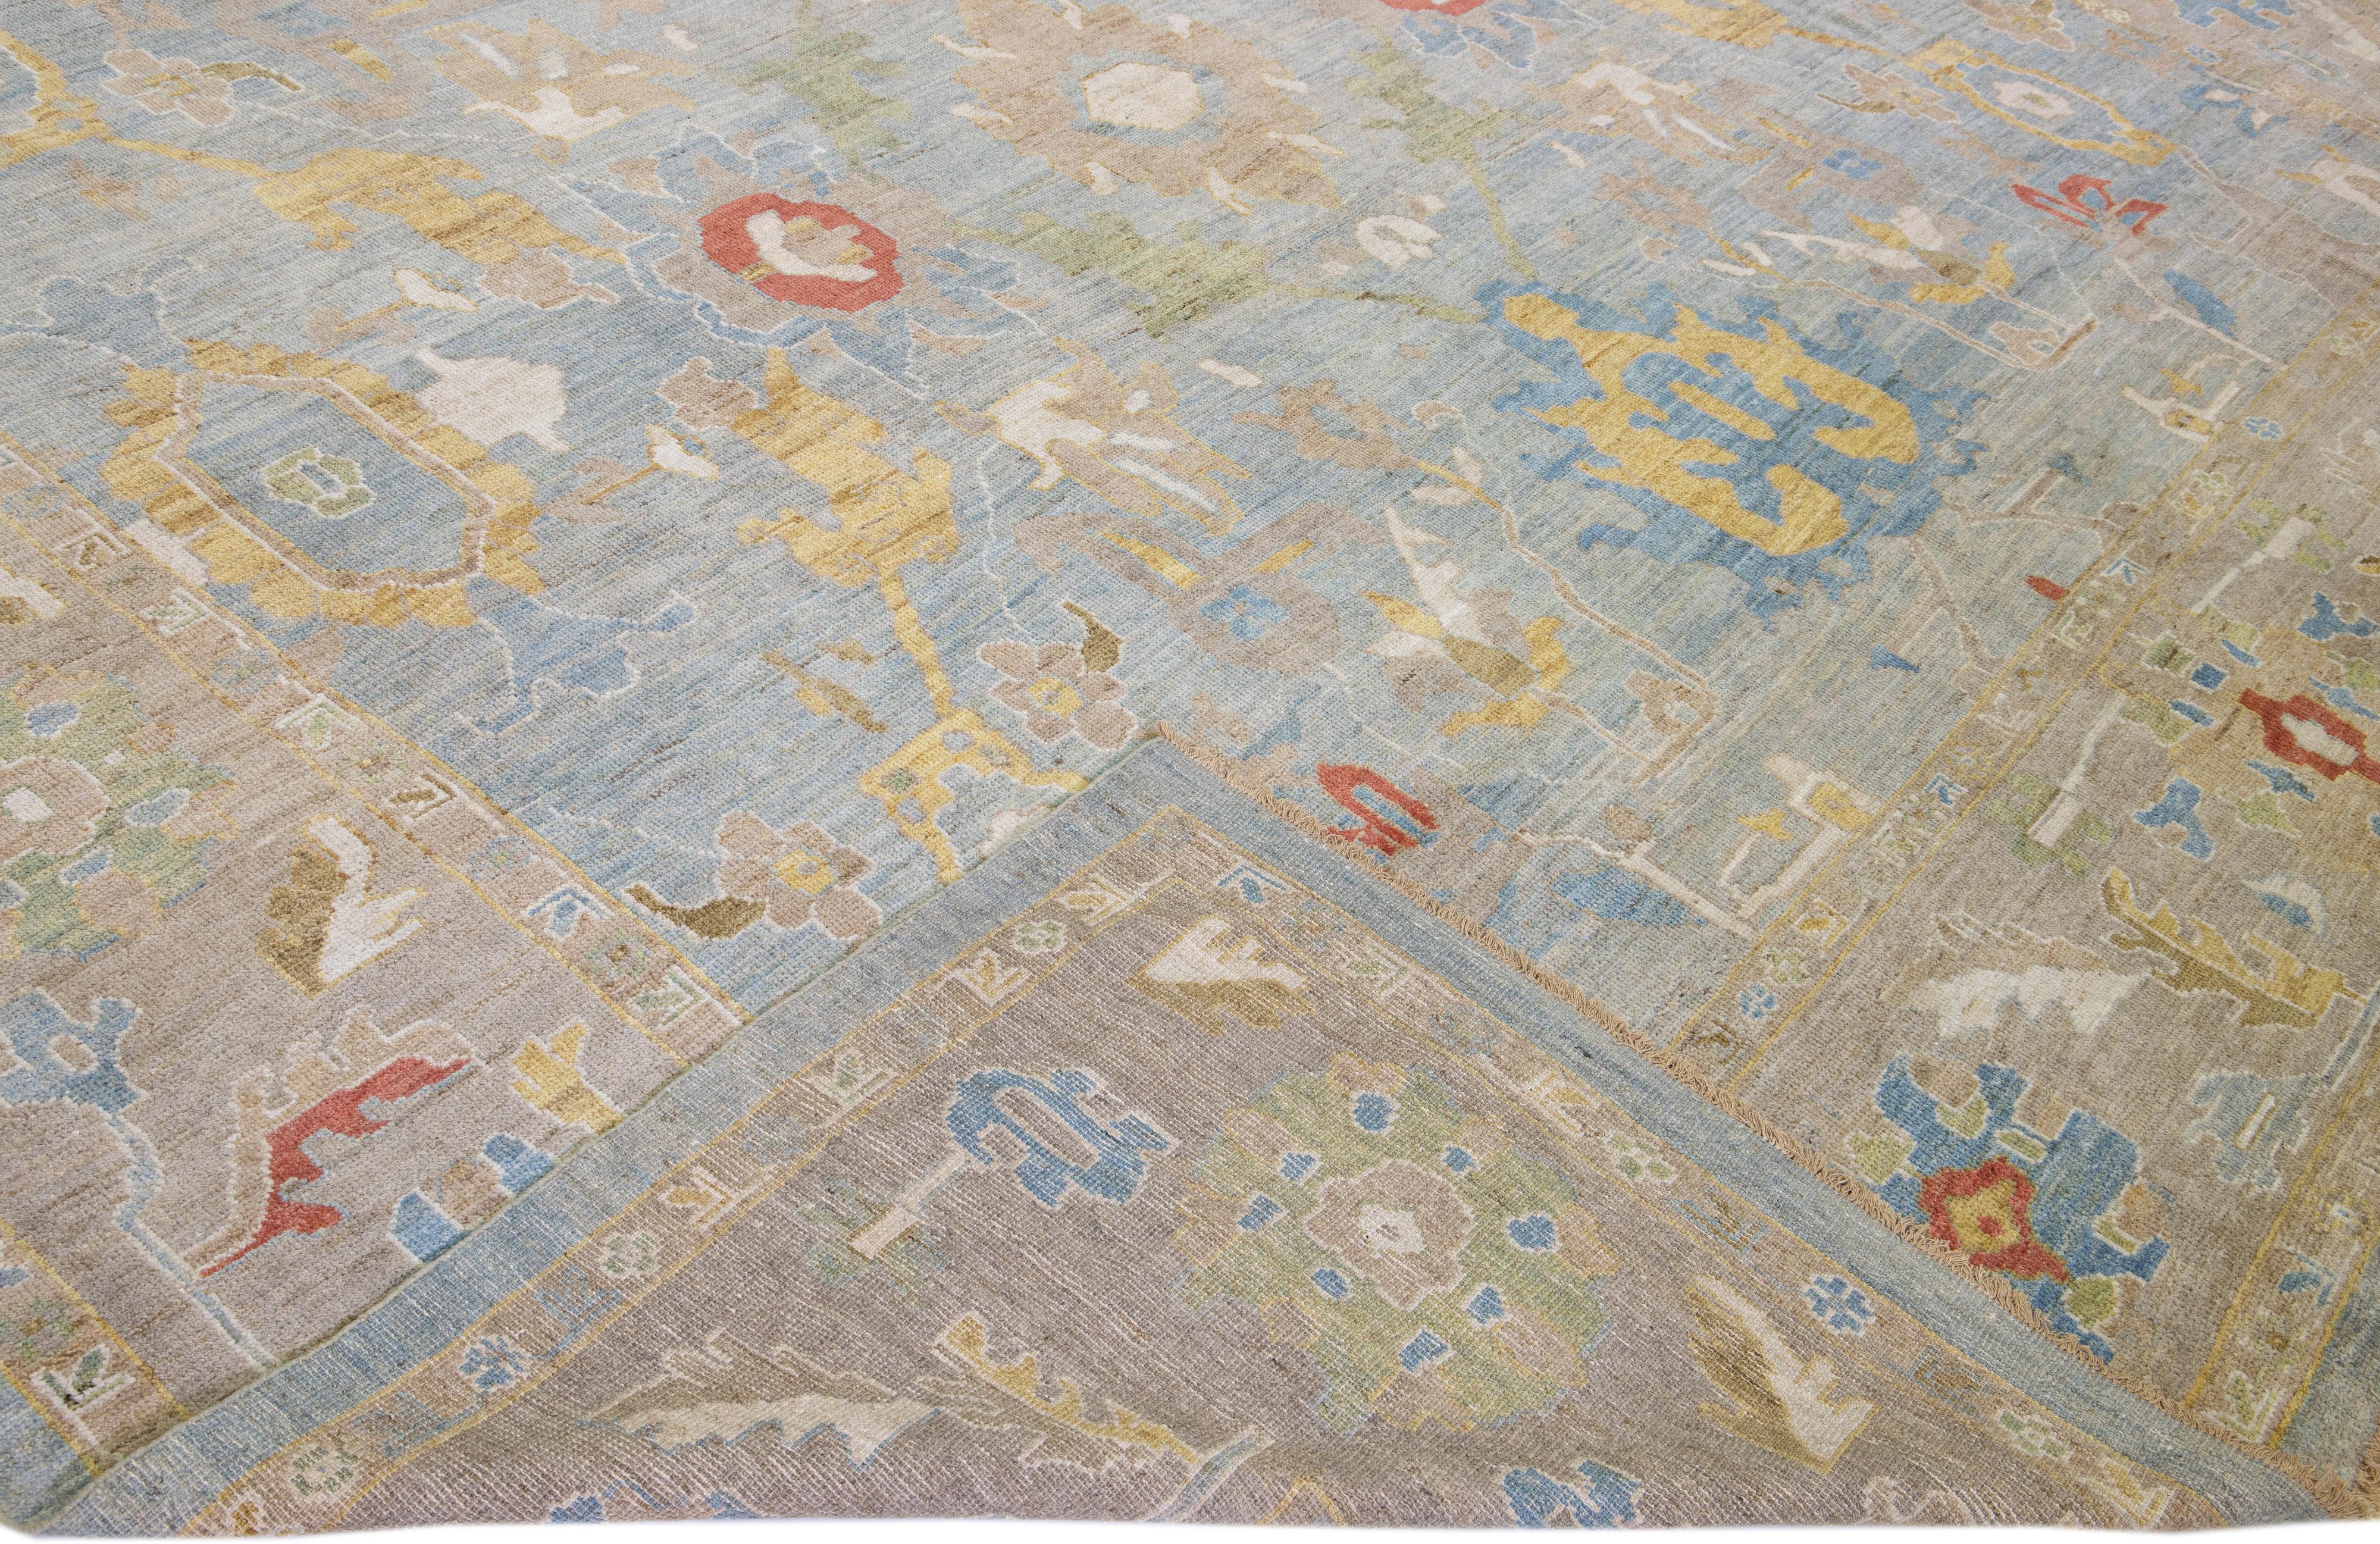 Schöner moderner, handgeknüpfter Sultanabad-Wollteppich mit blauem Feld. Dieser Sultanabad-Teppich hat einen braunen Rahmen und mehrfarbige Akzente in einem prächtigen klassischen Blumenmuster.

Dieser Teppich misst: 12'11